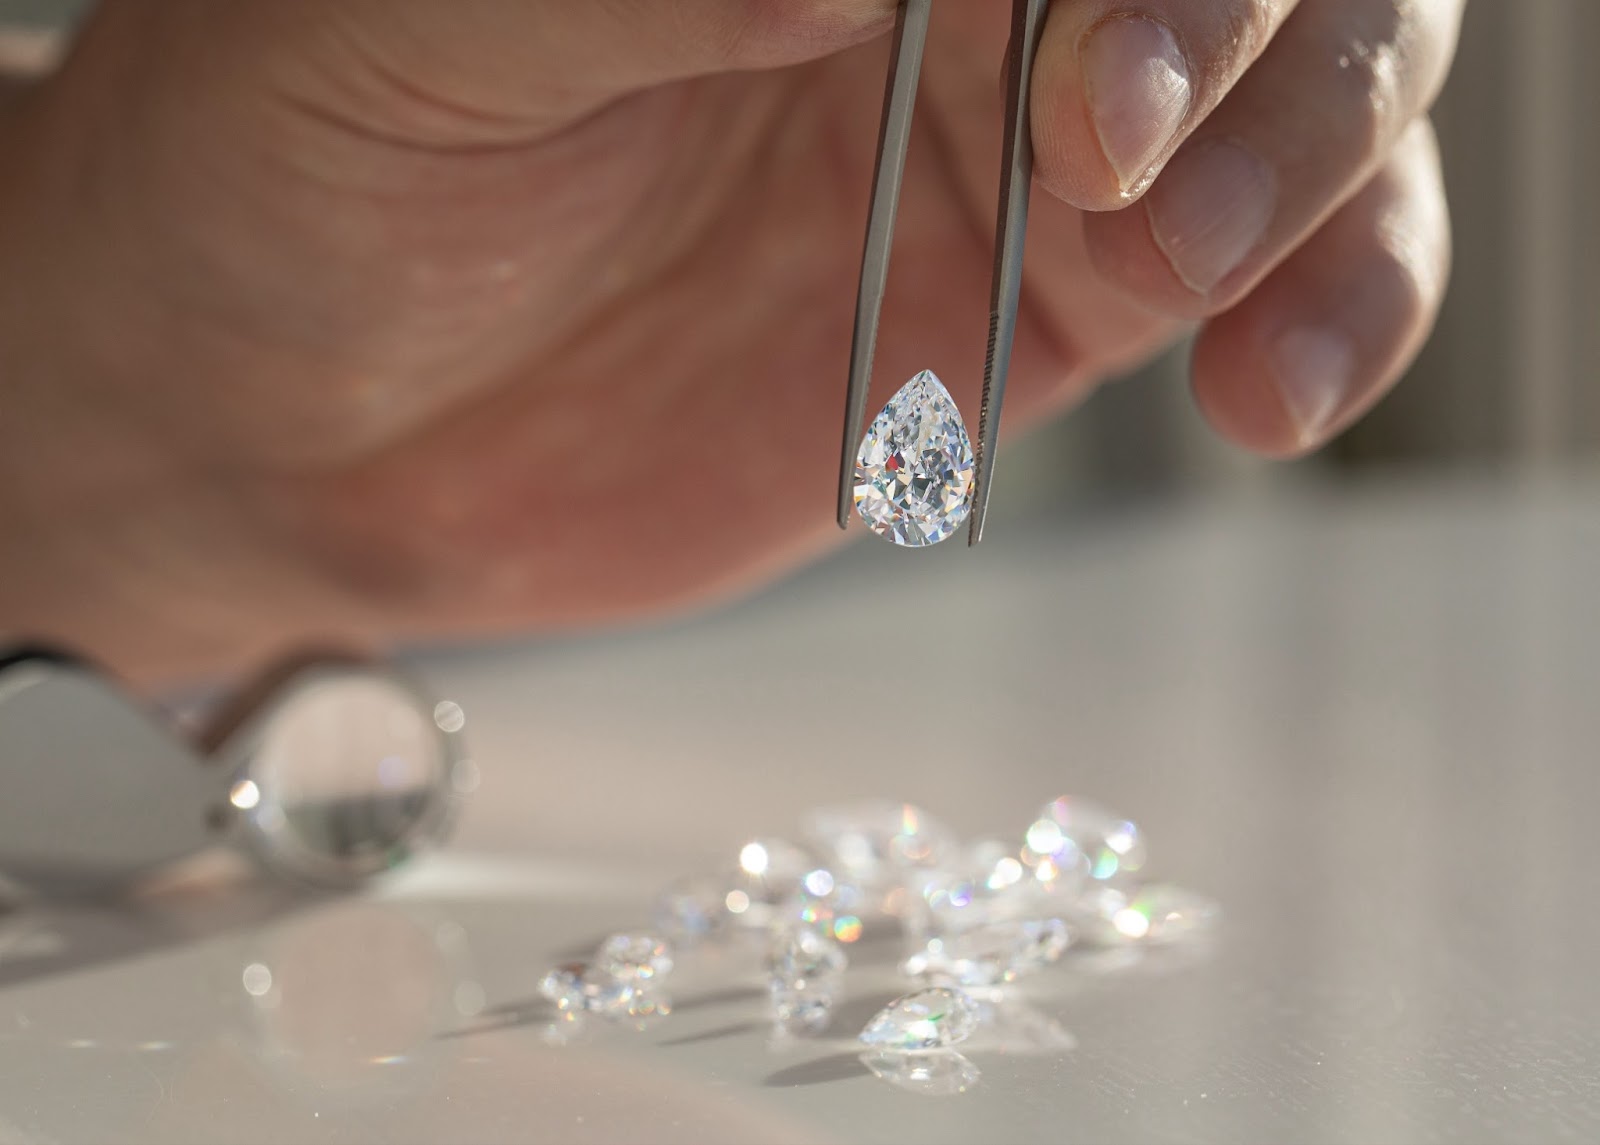 Immagine di una radiosa collana di diamanti di Aquae Jewels, accompagnata dal Certificato di Autenticità, simbolo dell'impegno del marchio verso l'eccellenza e l'integrità.